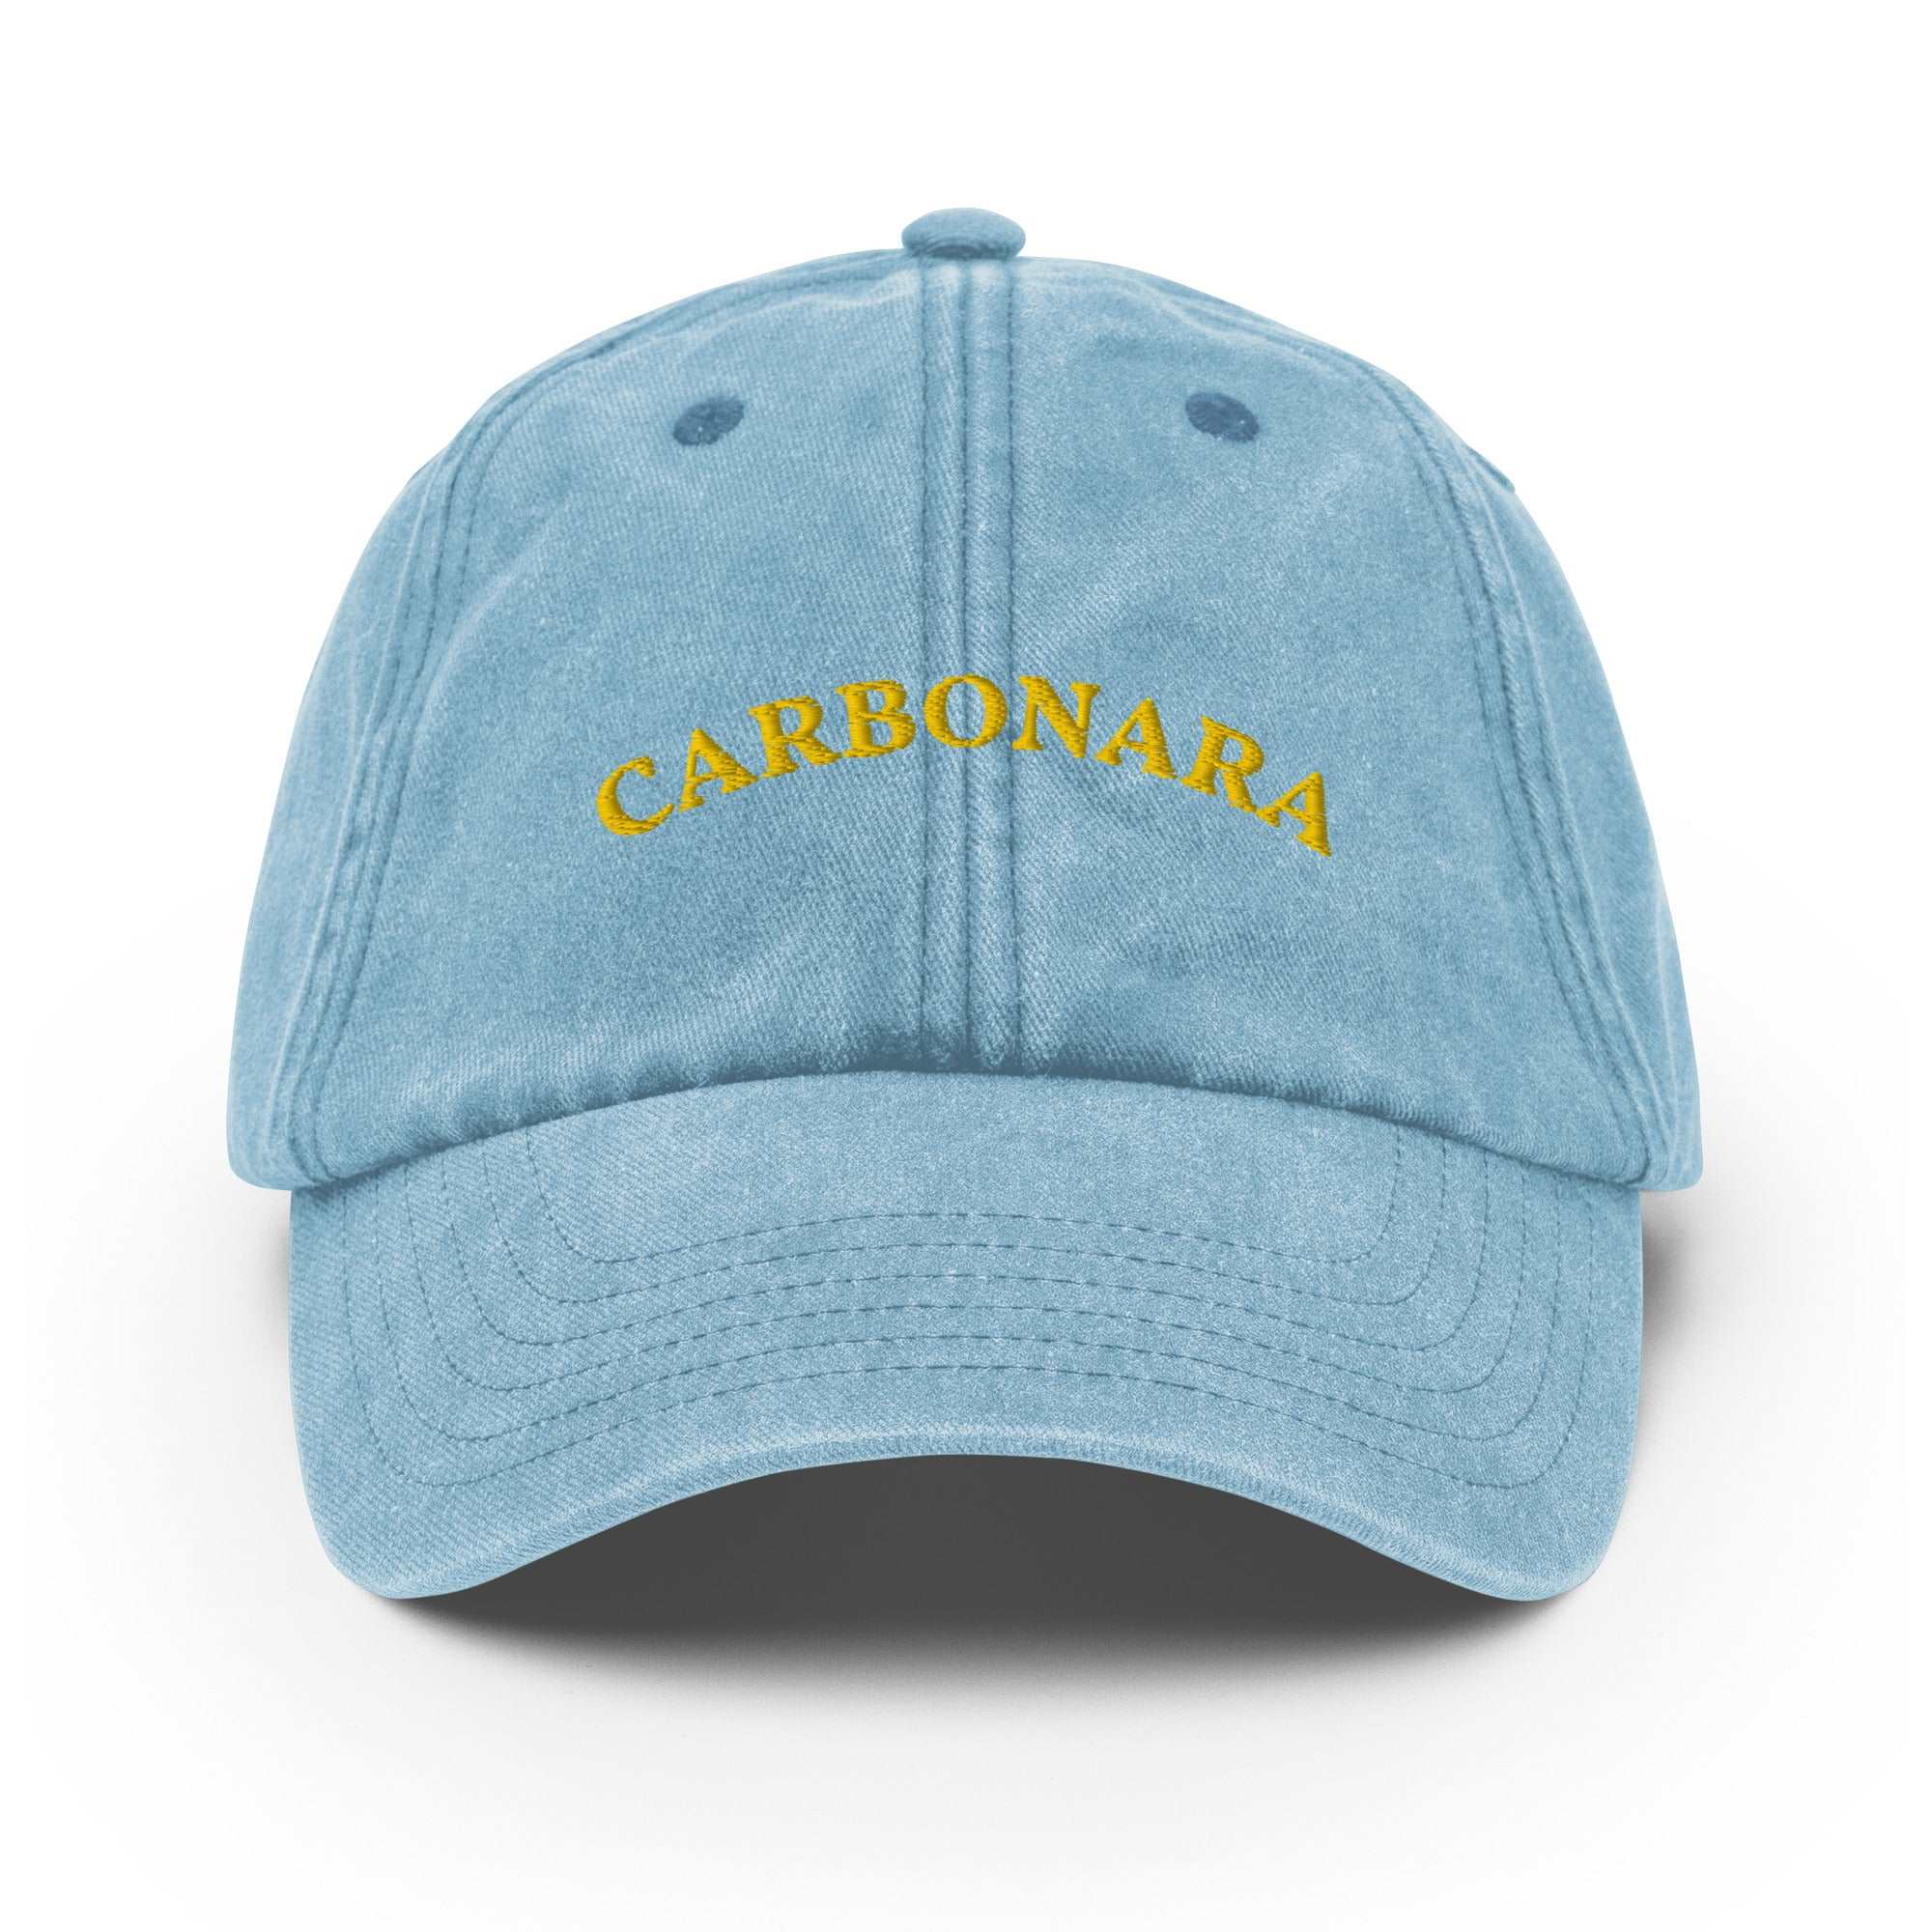 Carbonara Vintage Cap - The Refined Spirit